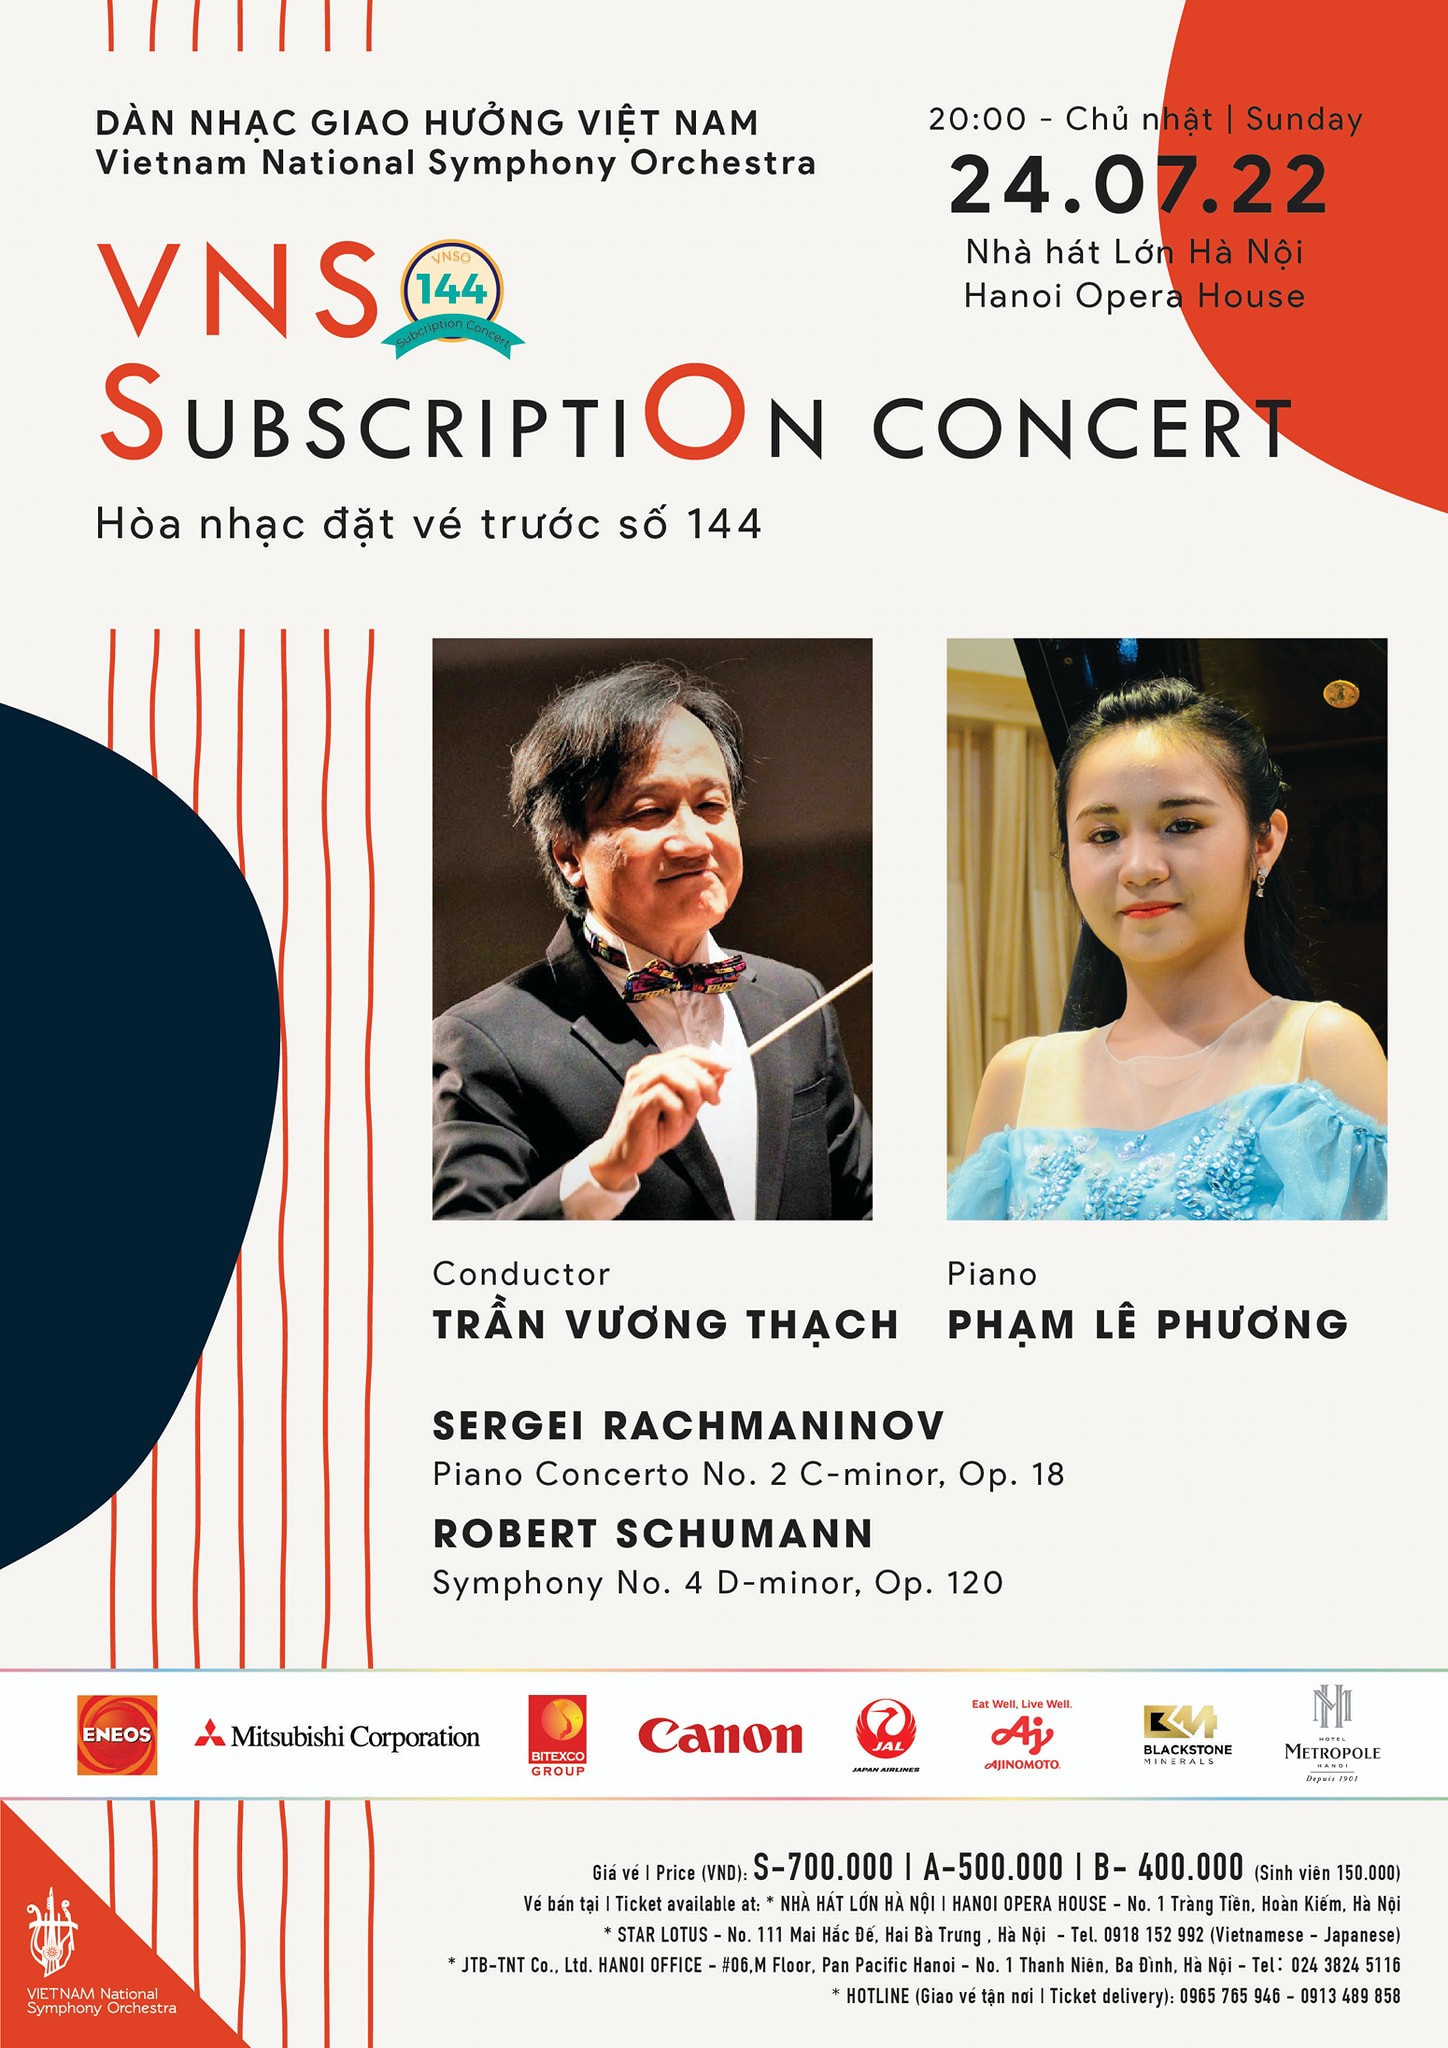 Hòa nhạc đặt vé trước số 144 - Subscription Concert Vol. 144